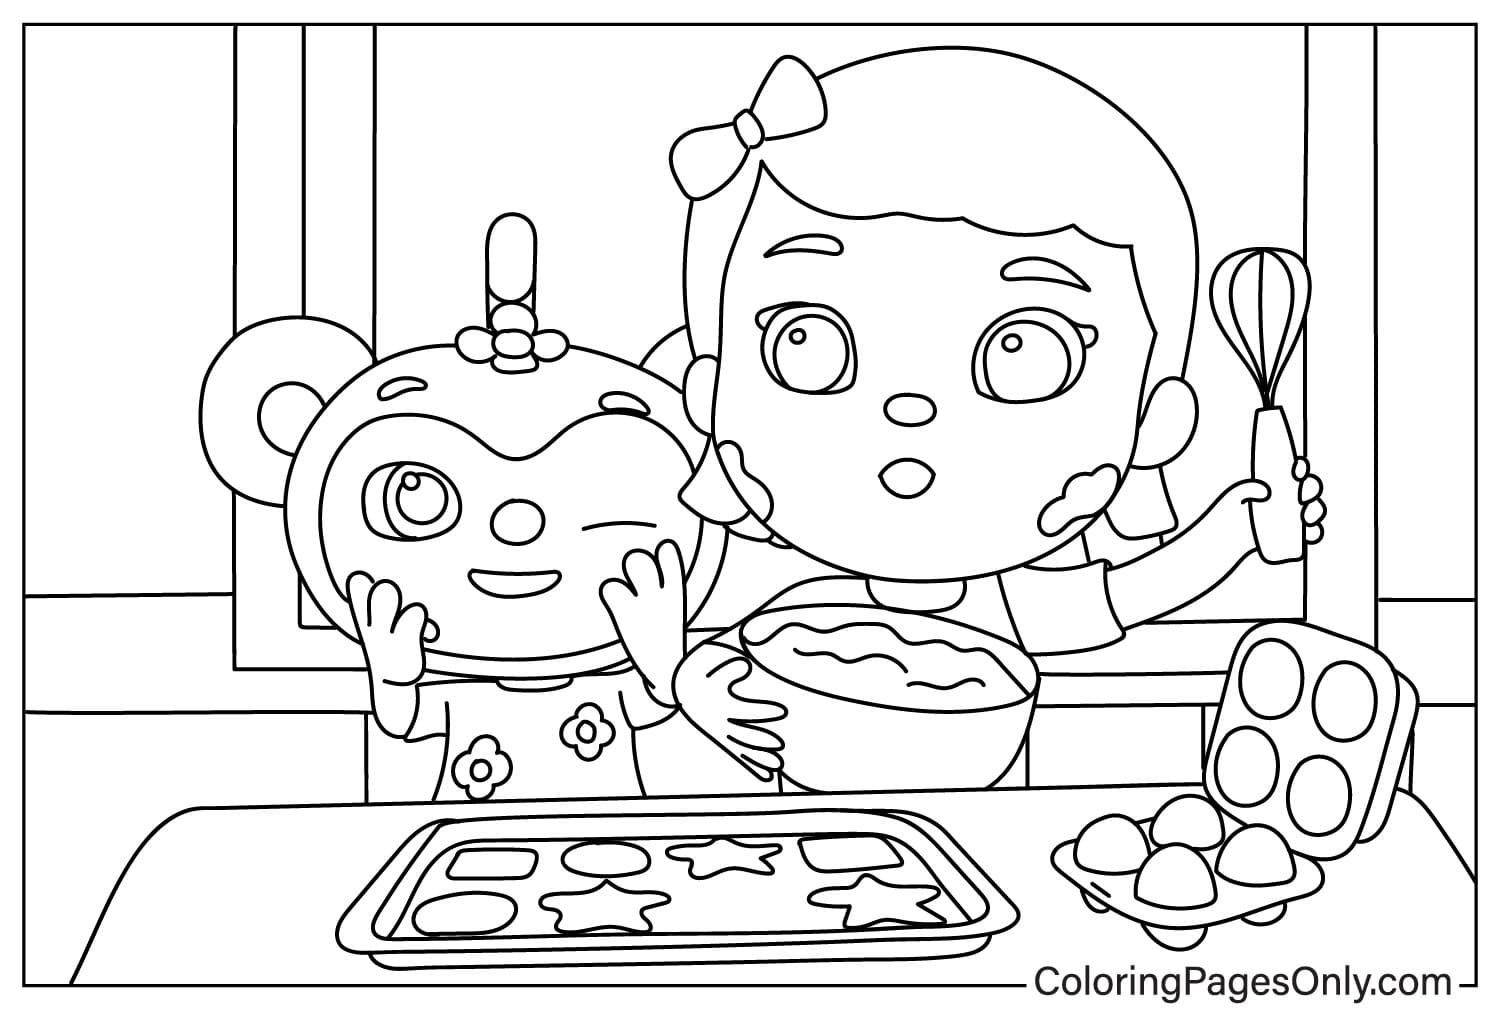 Petite fille et petit singe cuisinant dans Little Baby Bum de Little Baby Bum